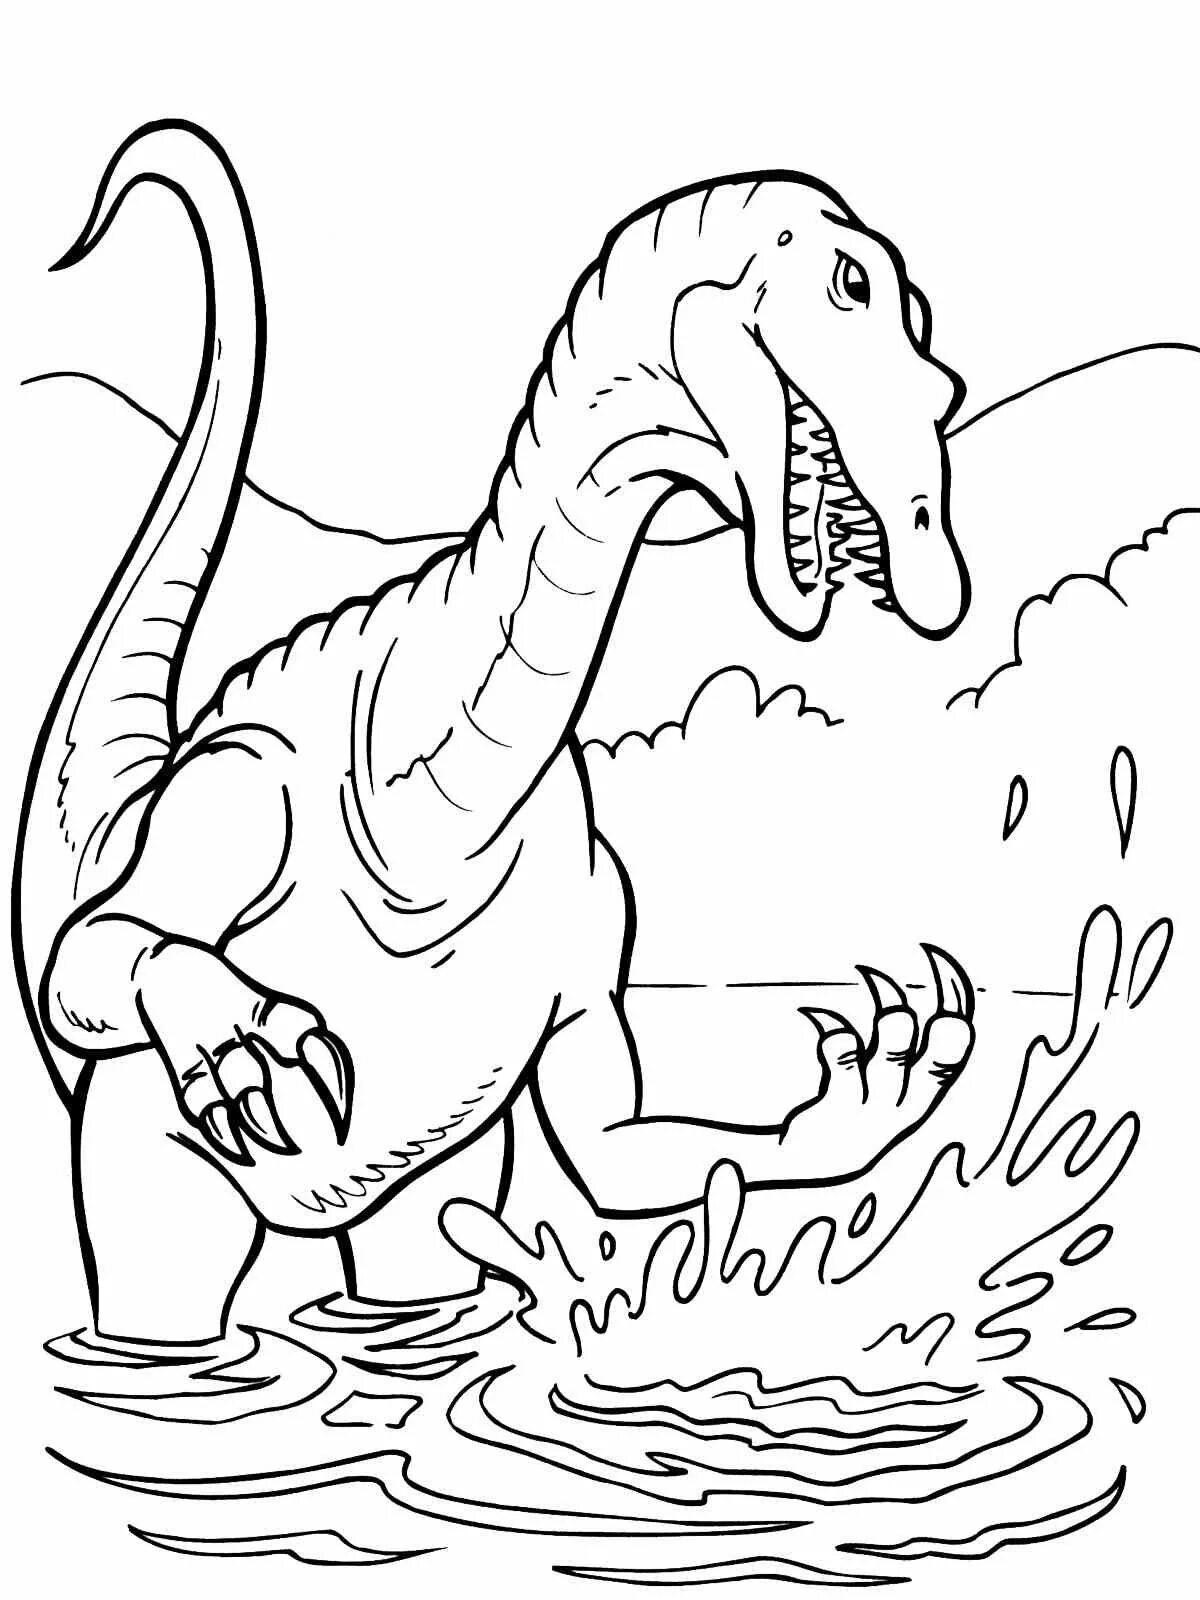 Динозавры раскраска а4. Динозавры / раскраска. Динозавр раскраска для детей. Рисунок динозавра для раскрашивания. Динозавры для раскрашивания детям.